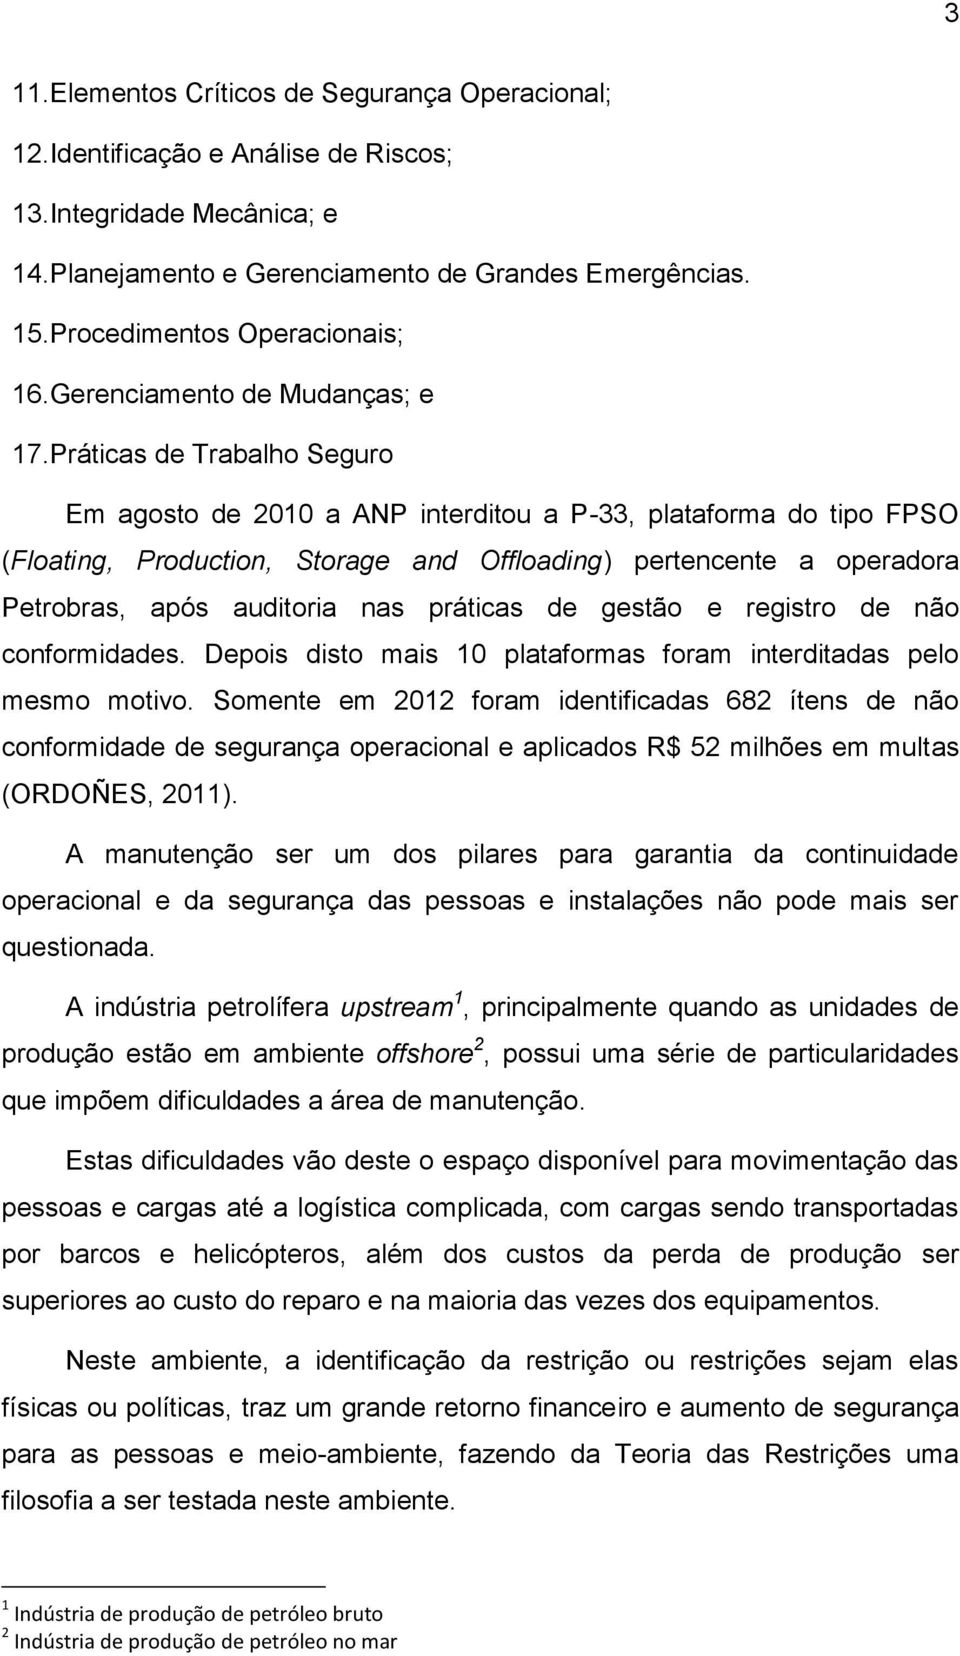 Práticas de Trabalho Seguro Em agosto de 2010 a ANP interditou a P-33, plataforma do tipo FPSO (Floating, Production, Storage and Offloading) pertencente a operadora Petrobras, após auditoria nas